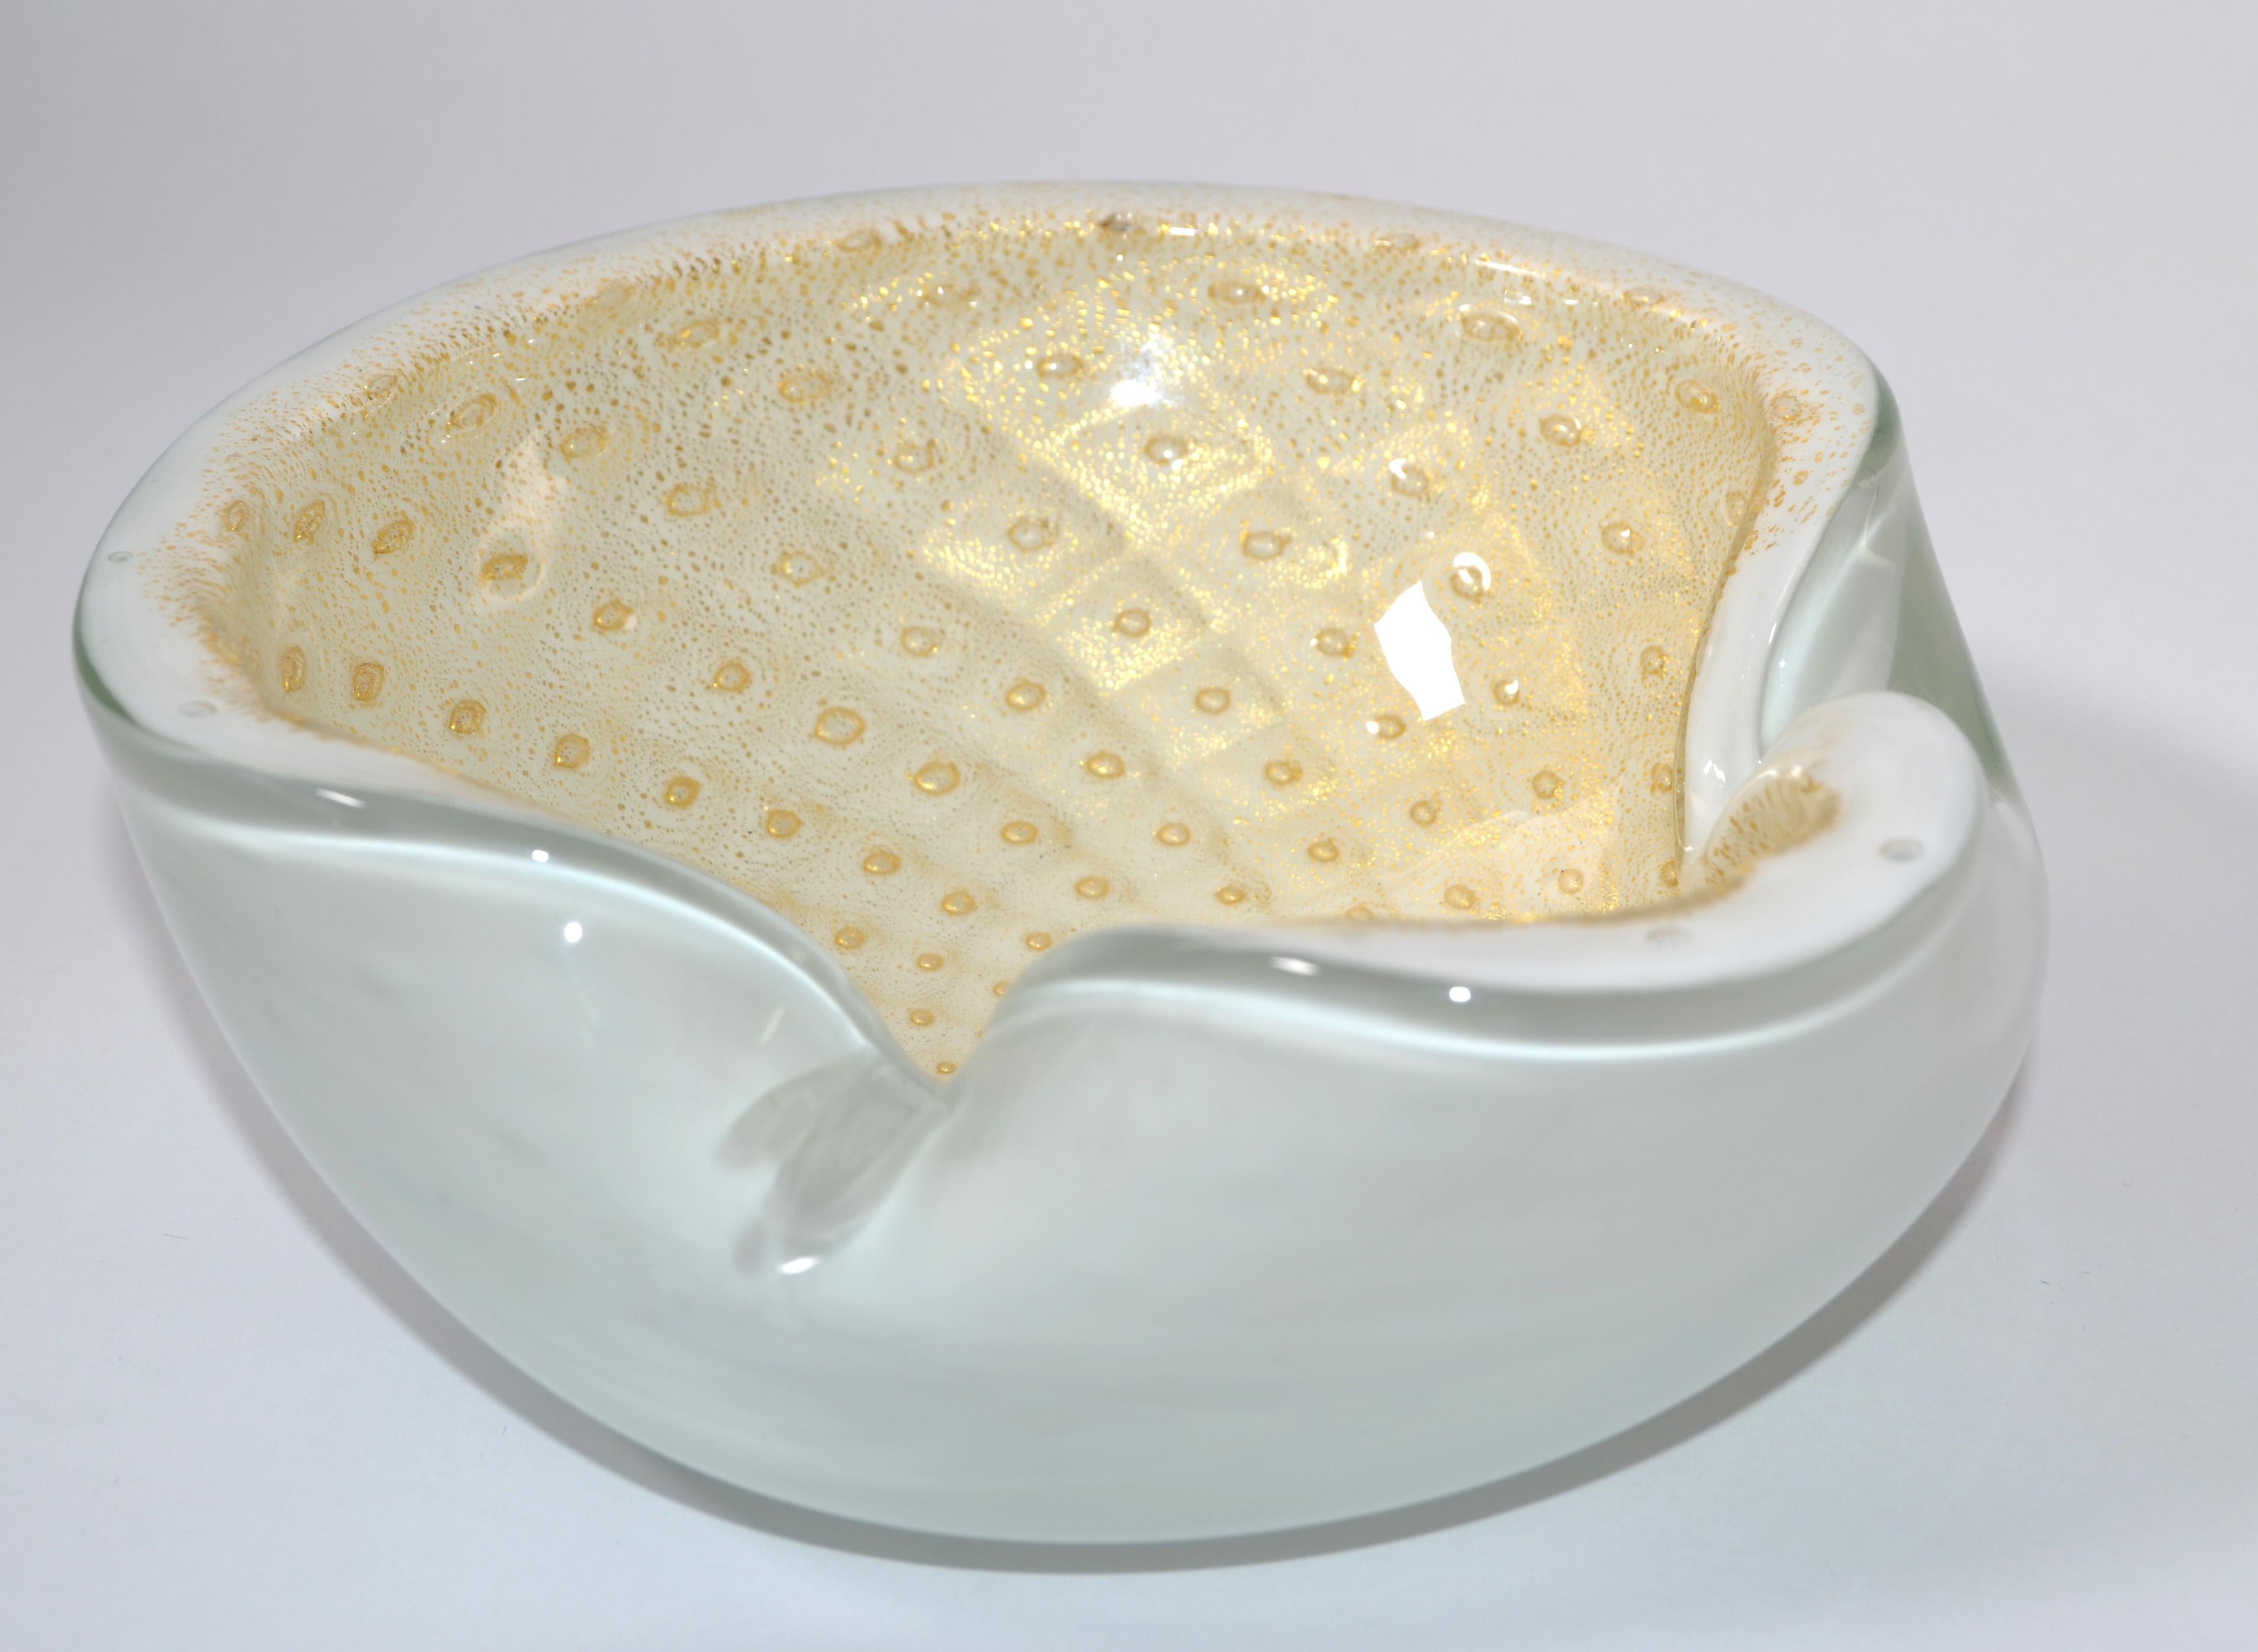 Italienische Mid-Century Modern Murano dreifach ummantelt weiß, beige und Goldstaub mundgeblasenem Glas Schüssel, Catchall oder Aschenbecher im Stil von Seguso Vetri d'Arte aus dem Murano Sommerso Workshop. 
Hergestellt in den späten 1960er